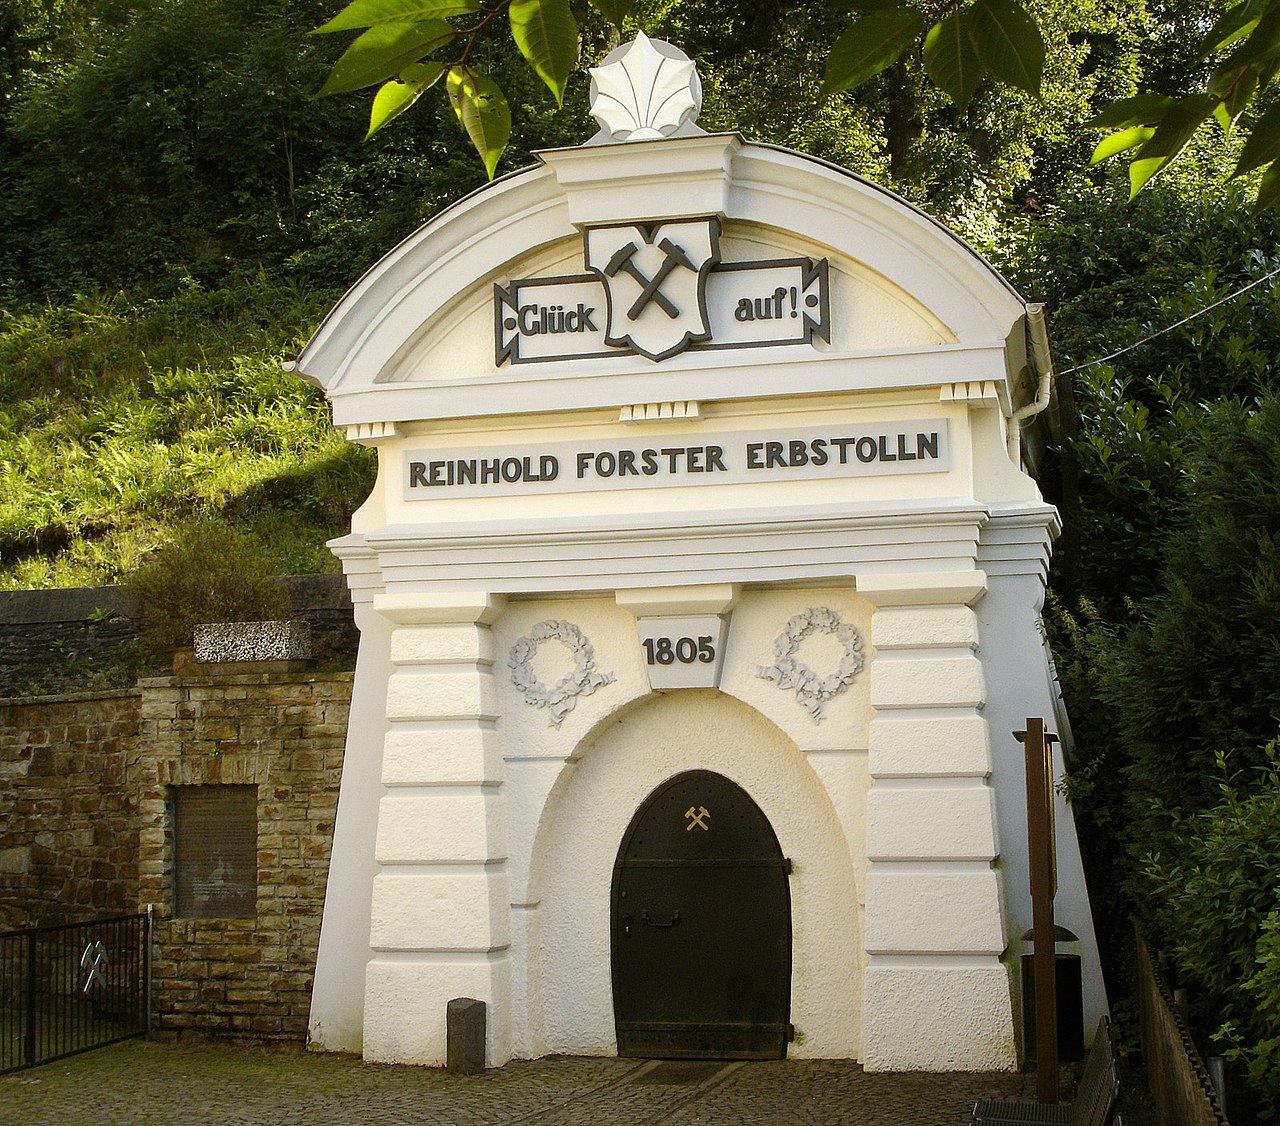 Eingangsportal des Reinhold Forster Erbstollen in Eiserfeld. Er wird heute als Schaubergwerk genutzt Bild von Bob Ionescu